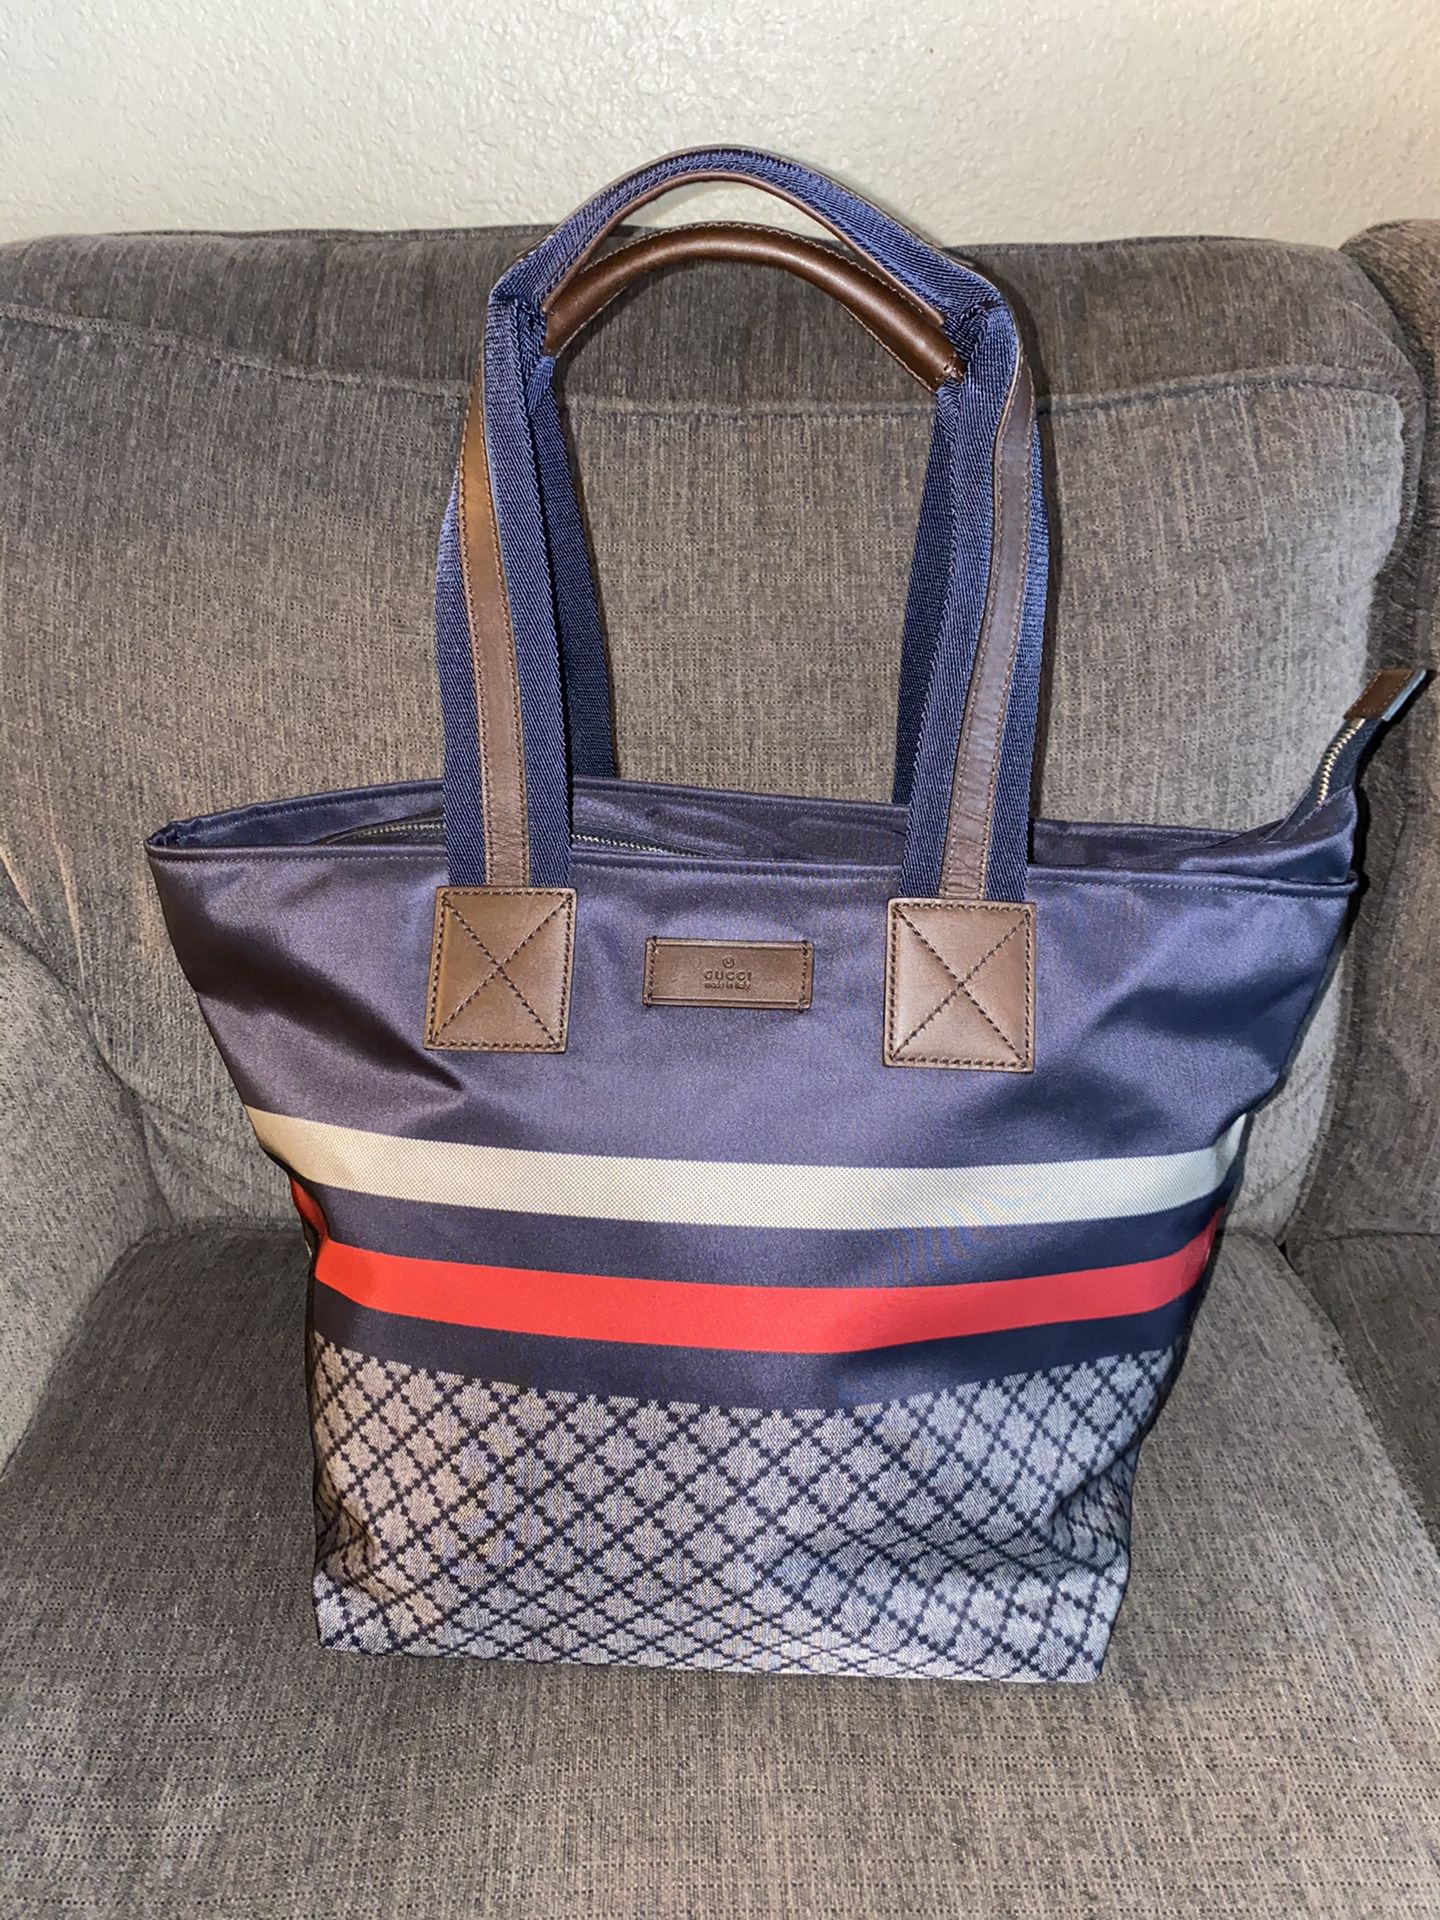 Gucci Unisex Blue Nylon Diamante Travel Tote Handbag {contact info removed}